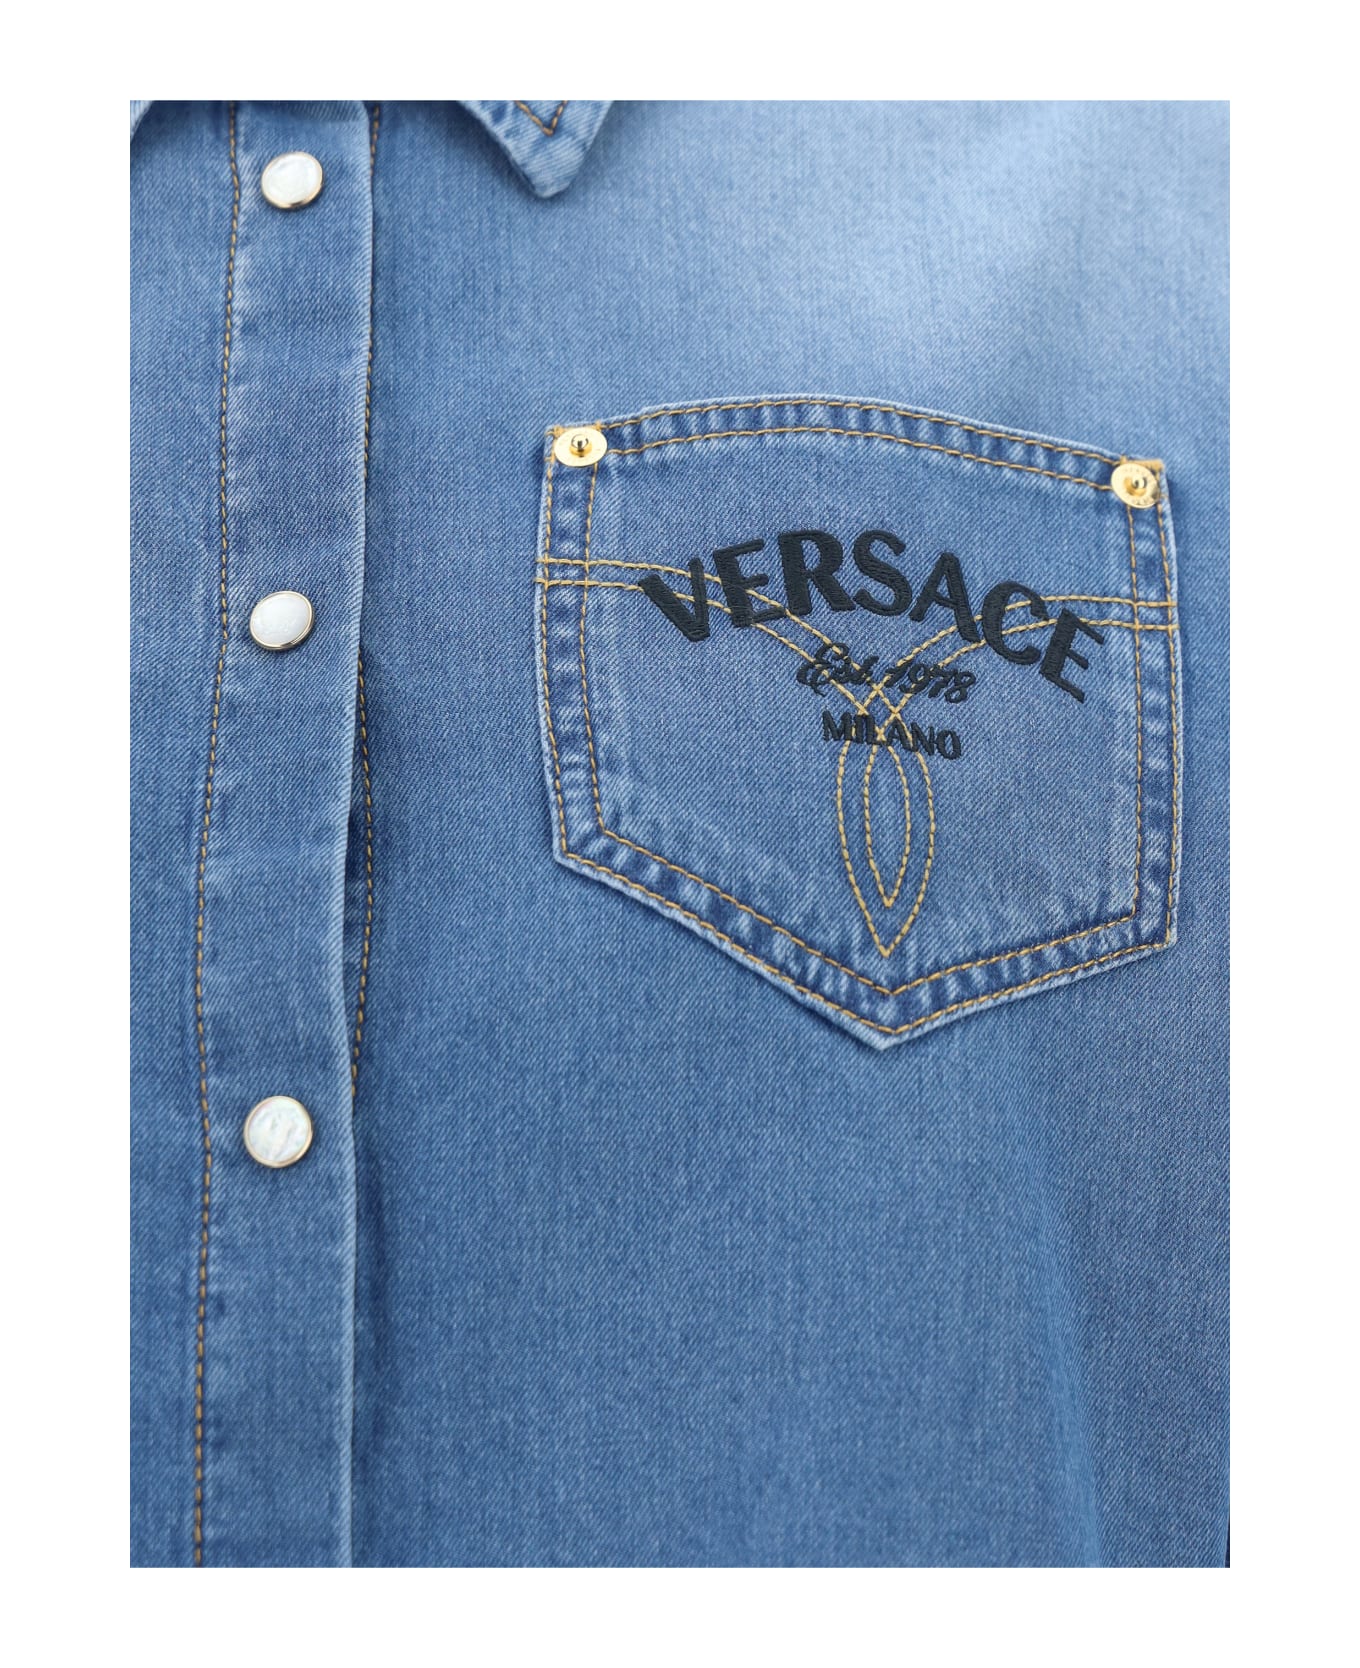 Versace Button-up Cropped Denim Shirt - Medium Blue